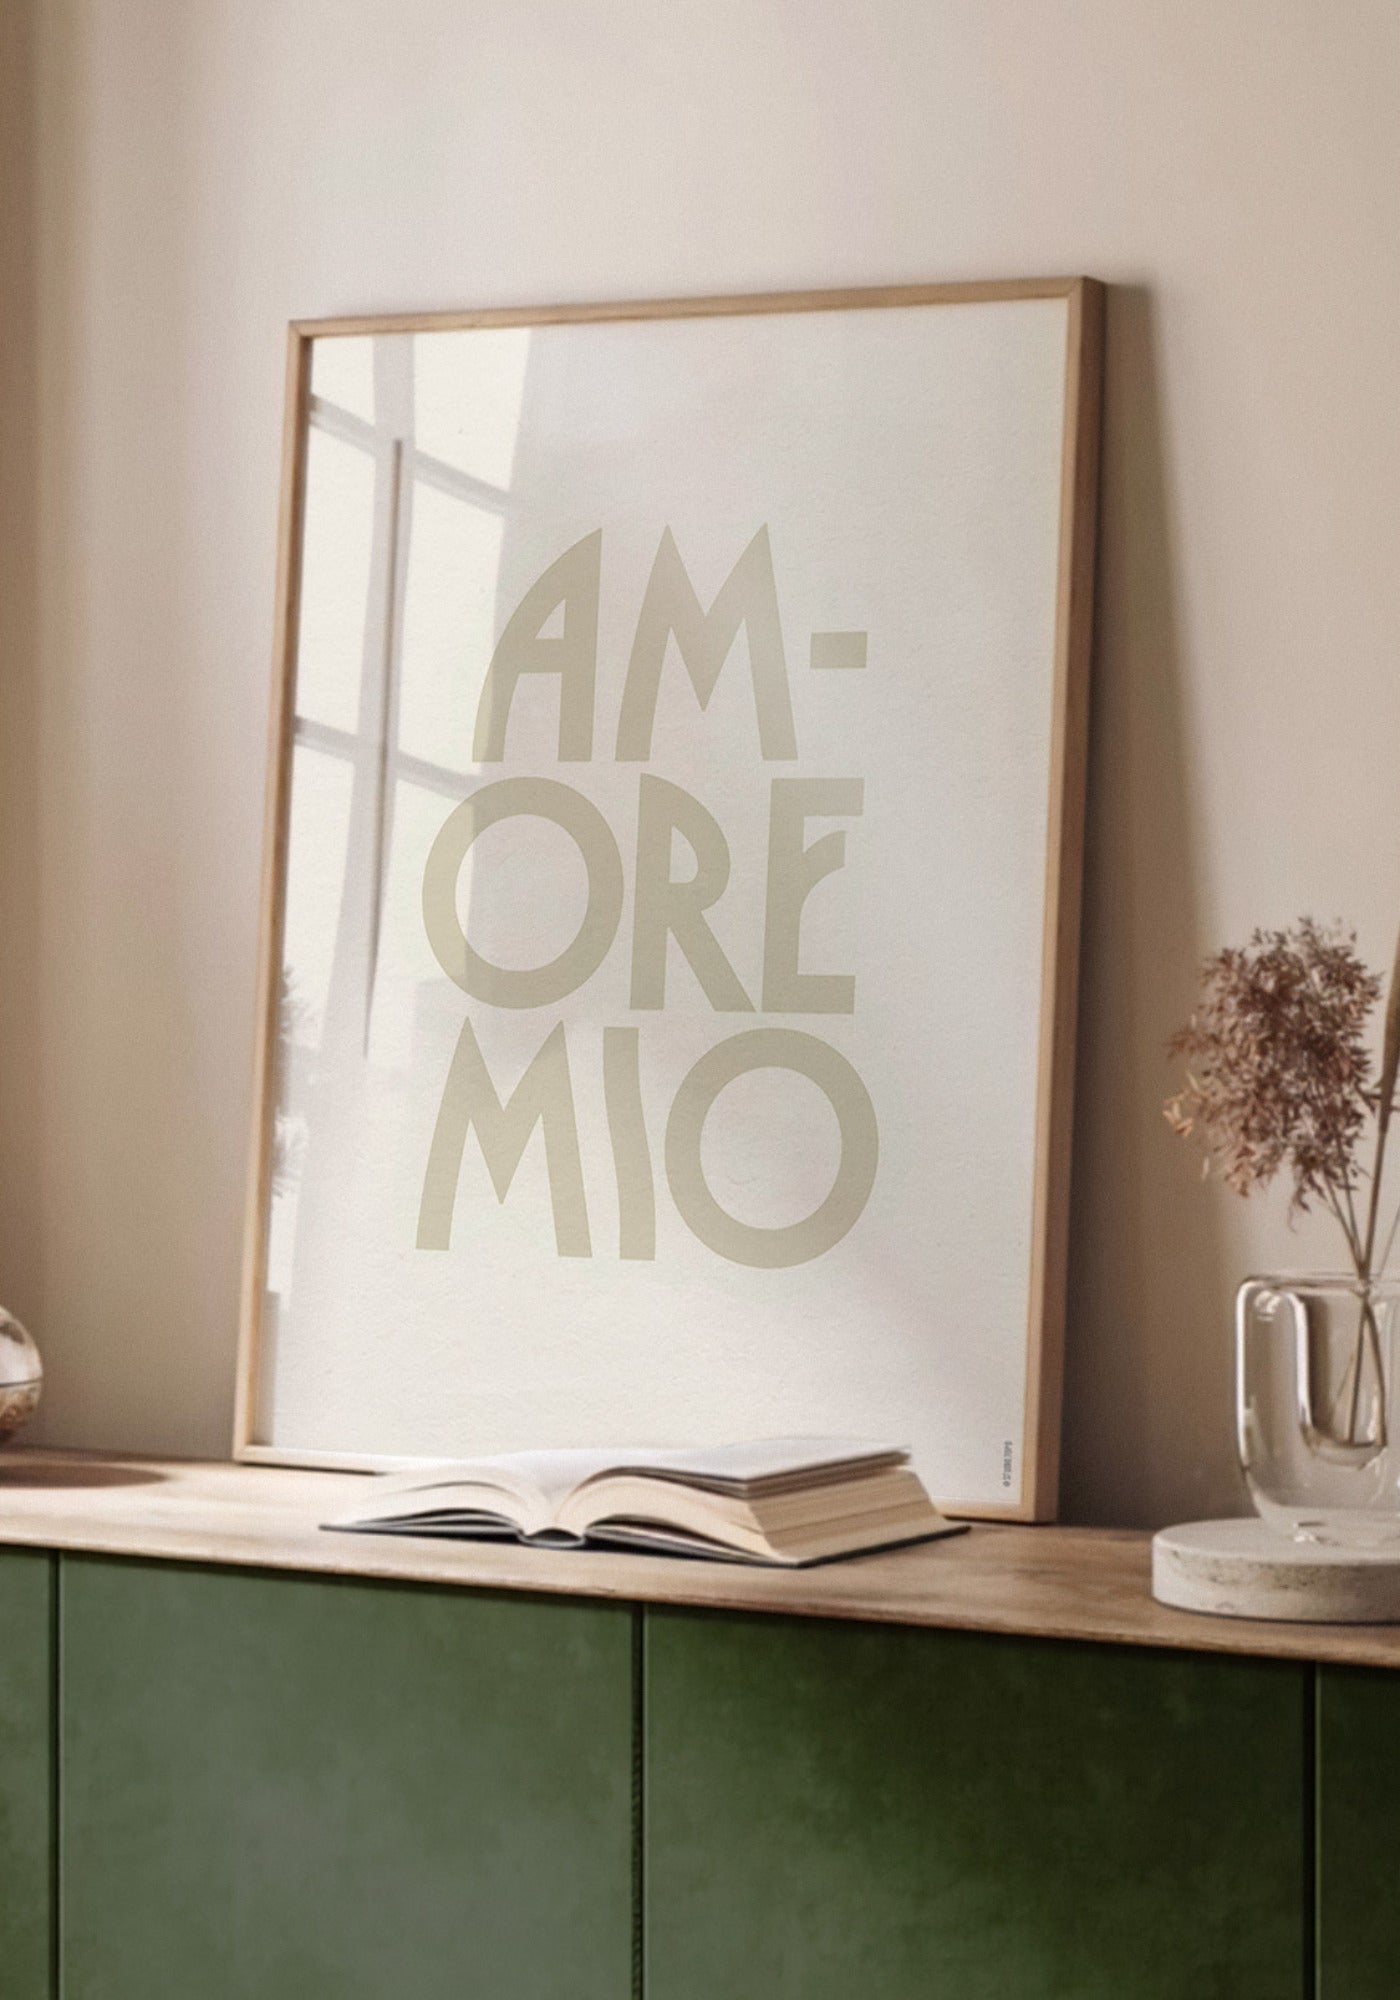 L'affiche typographique "Amore mio" en 30x40 cm de chez Studio Topo